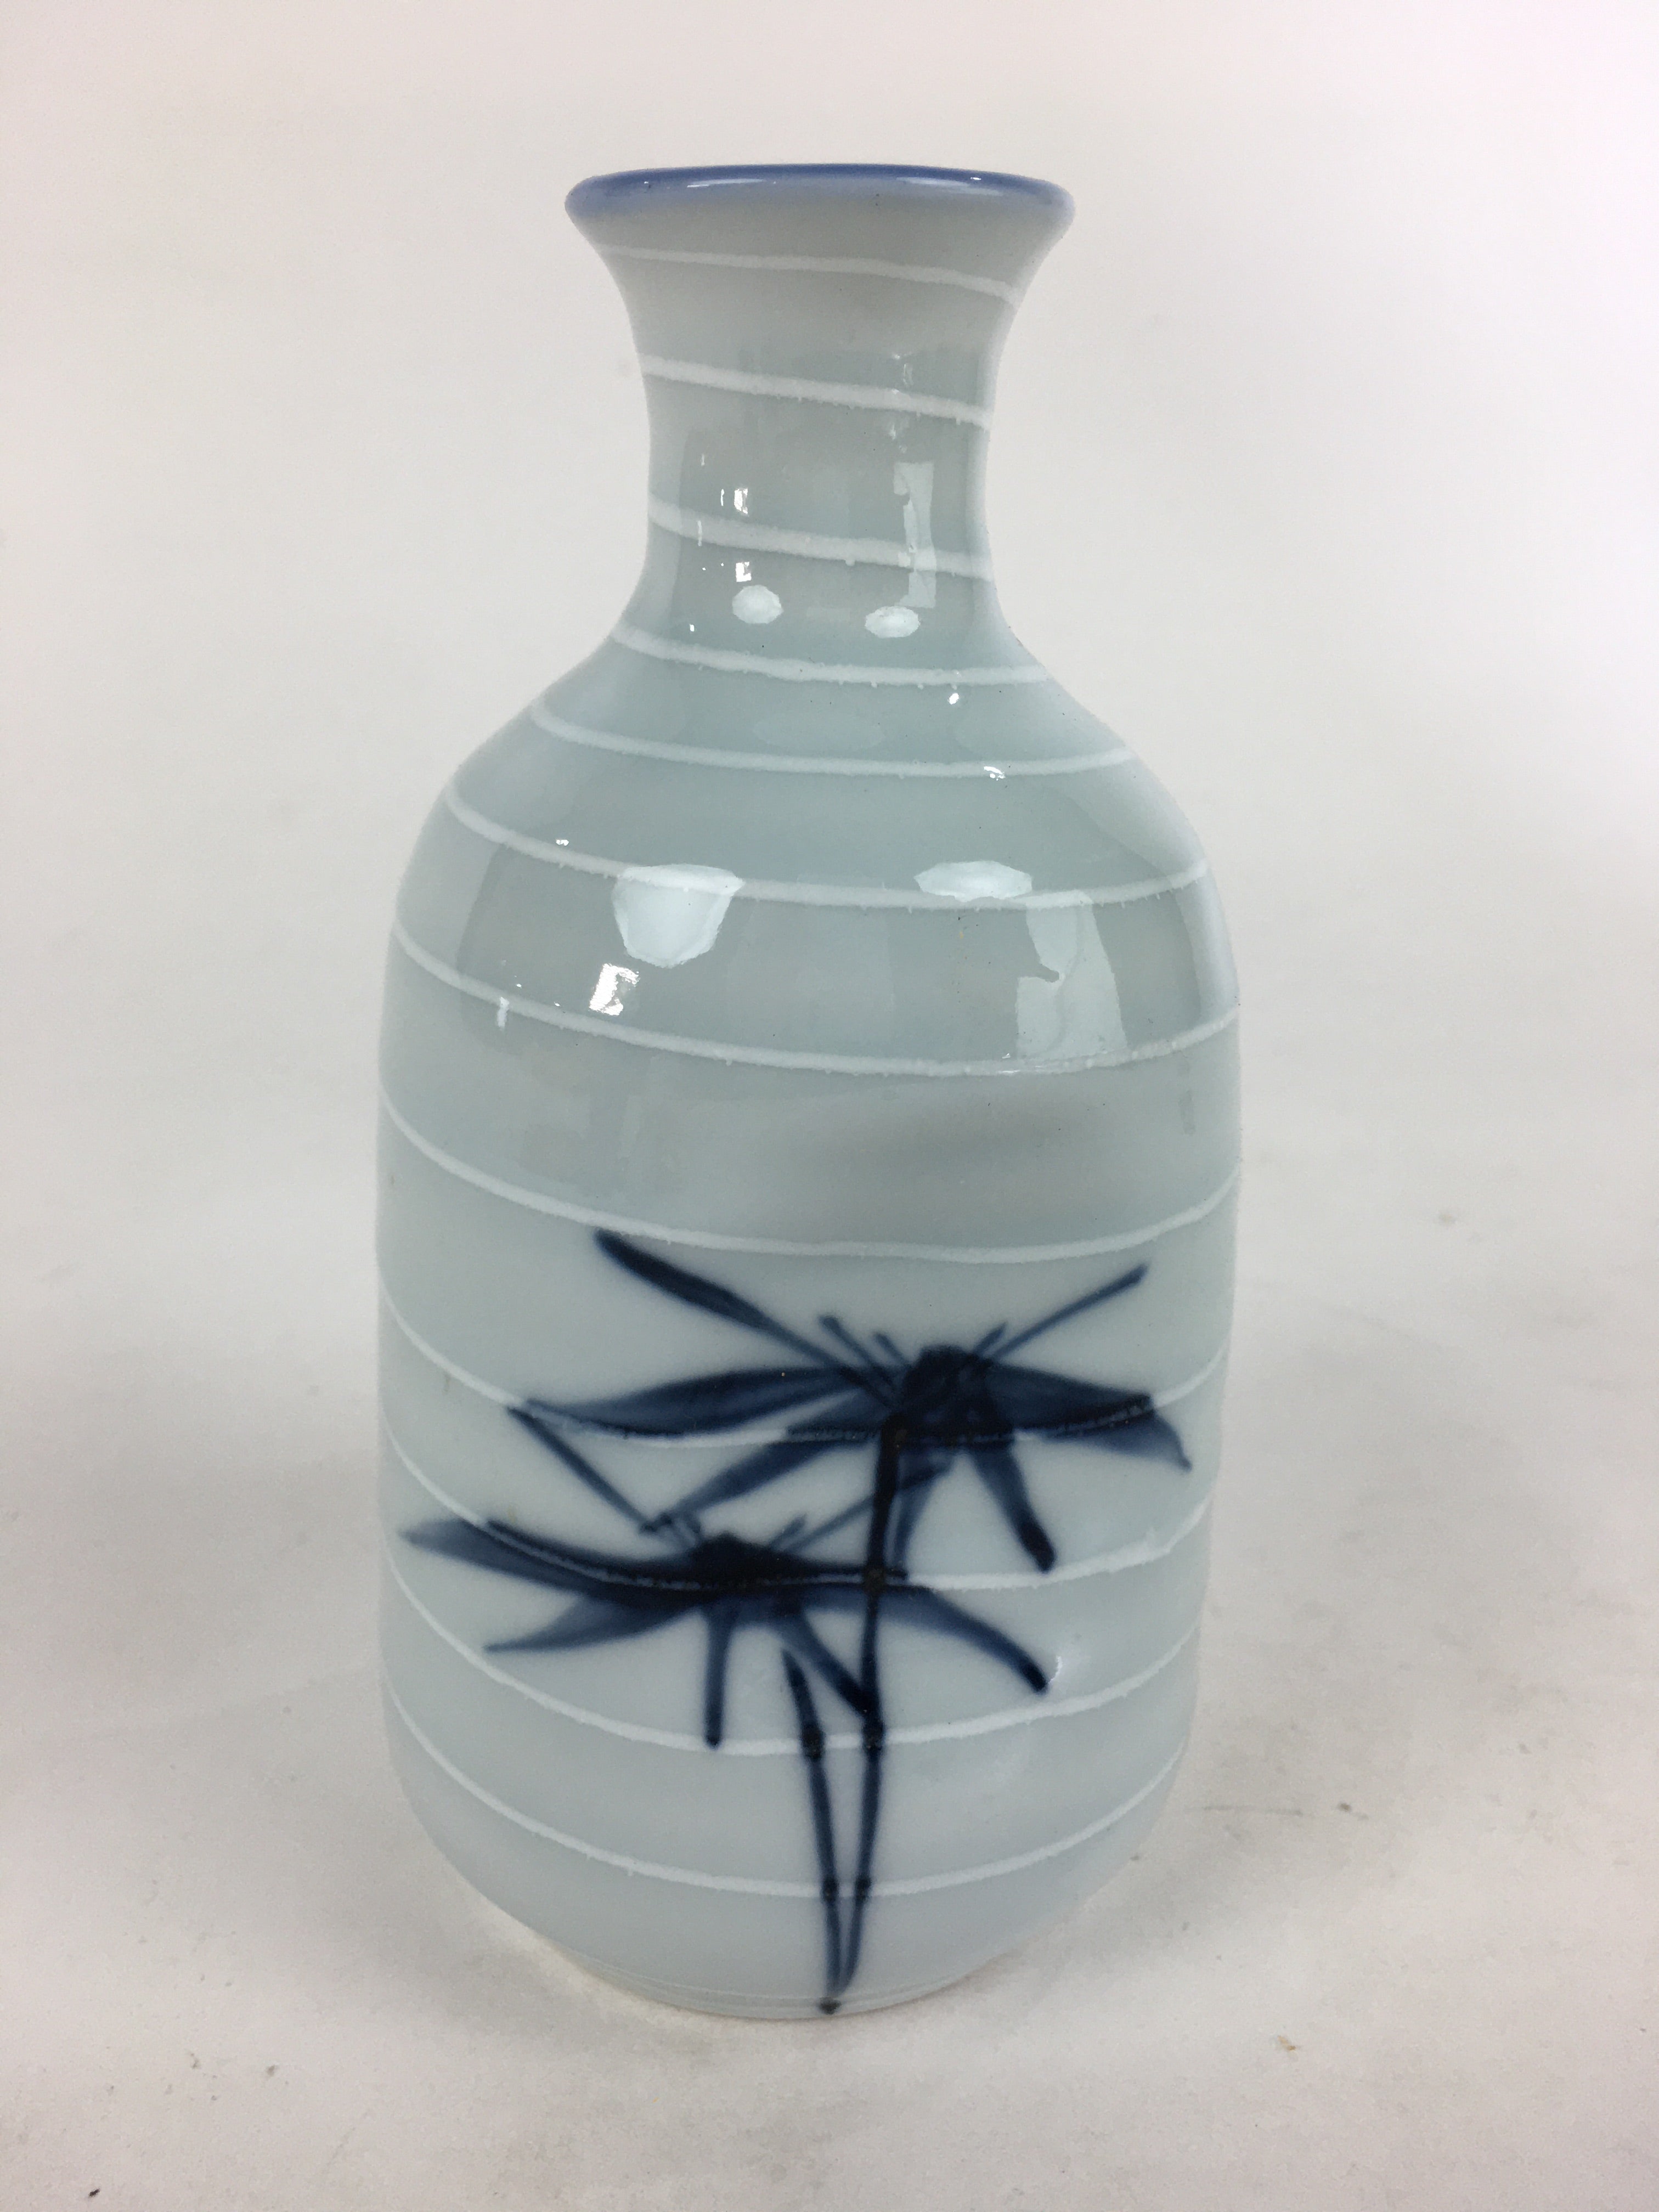 Japanese Porcelain Sake Bottle Vtg Blue Bamboo Dimple Design Tokkuri TS358